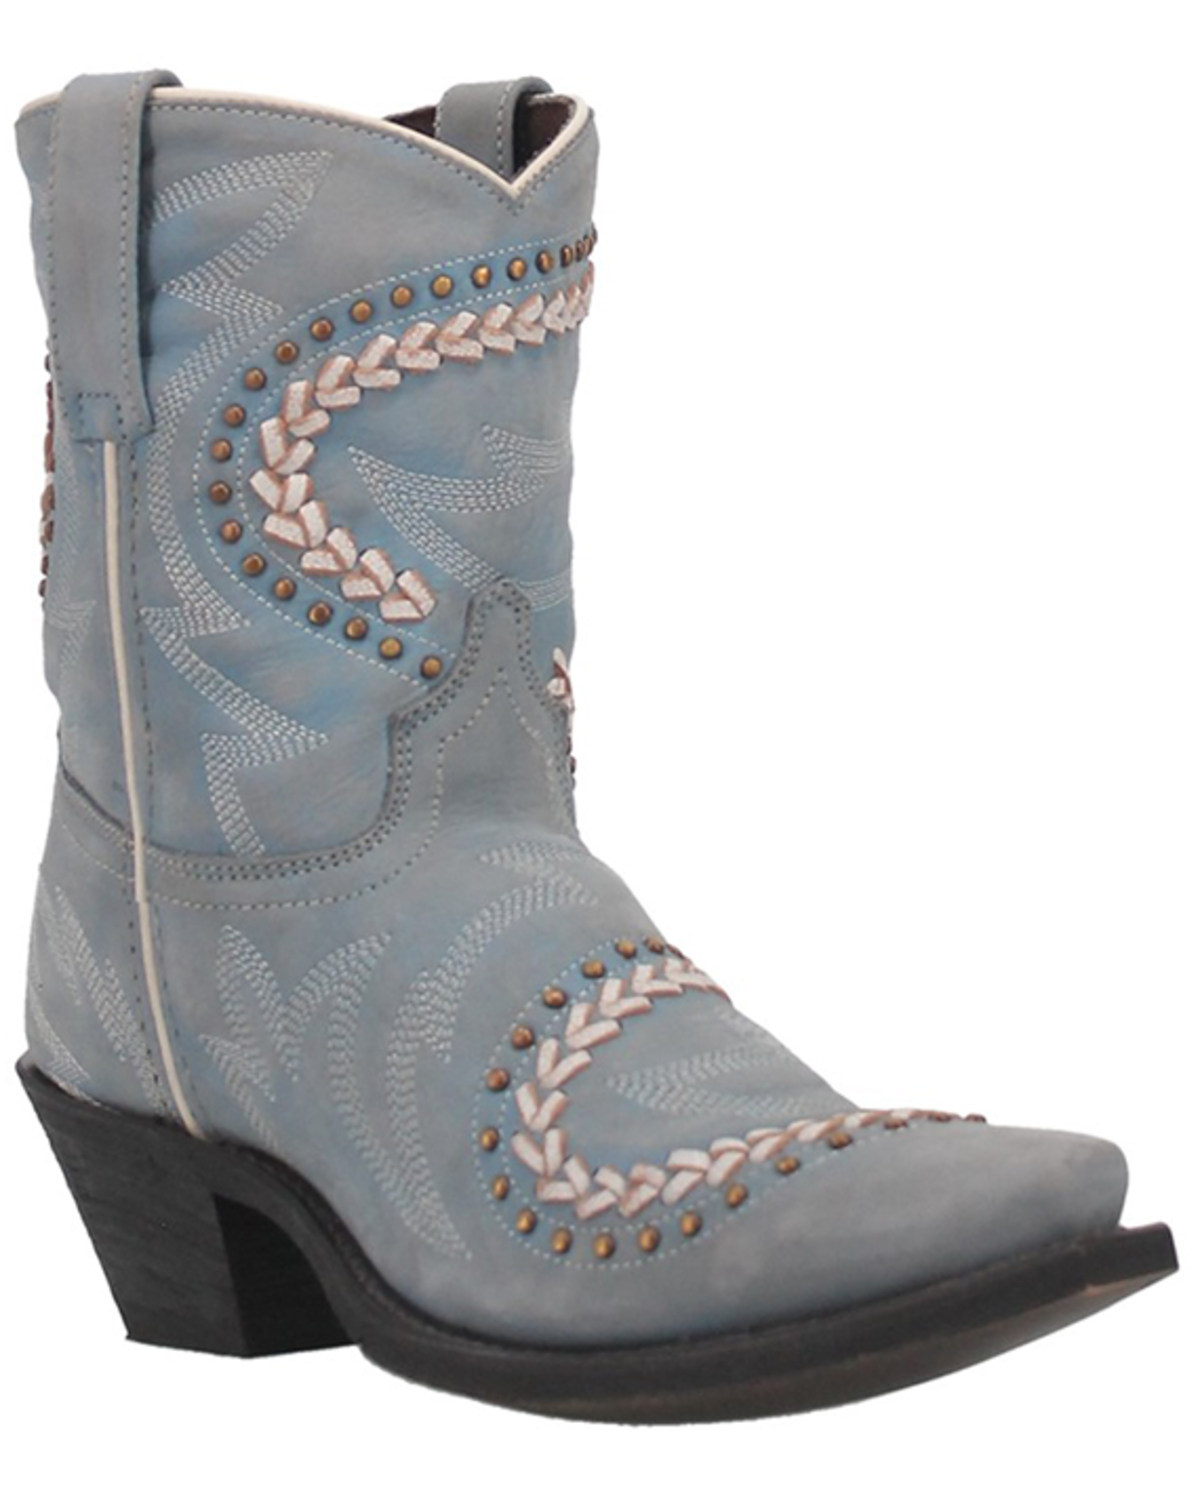 Laredo Women's Fancy Leather Western Boot - Snip Toe